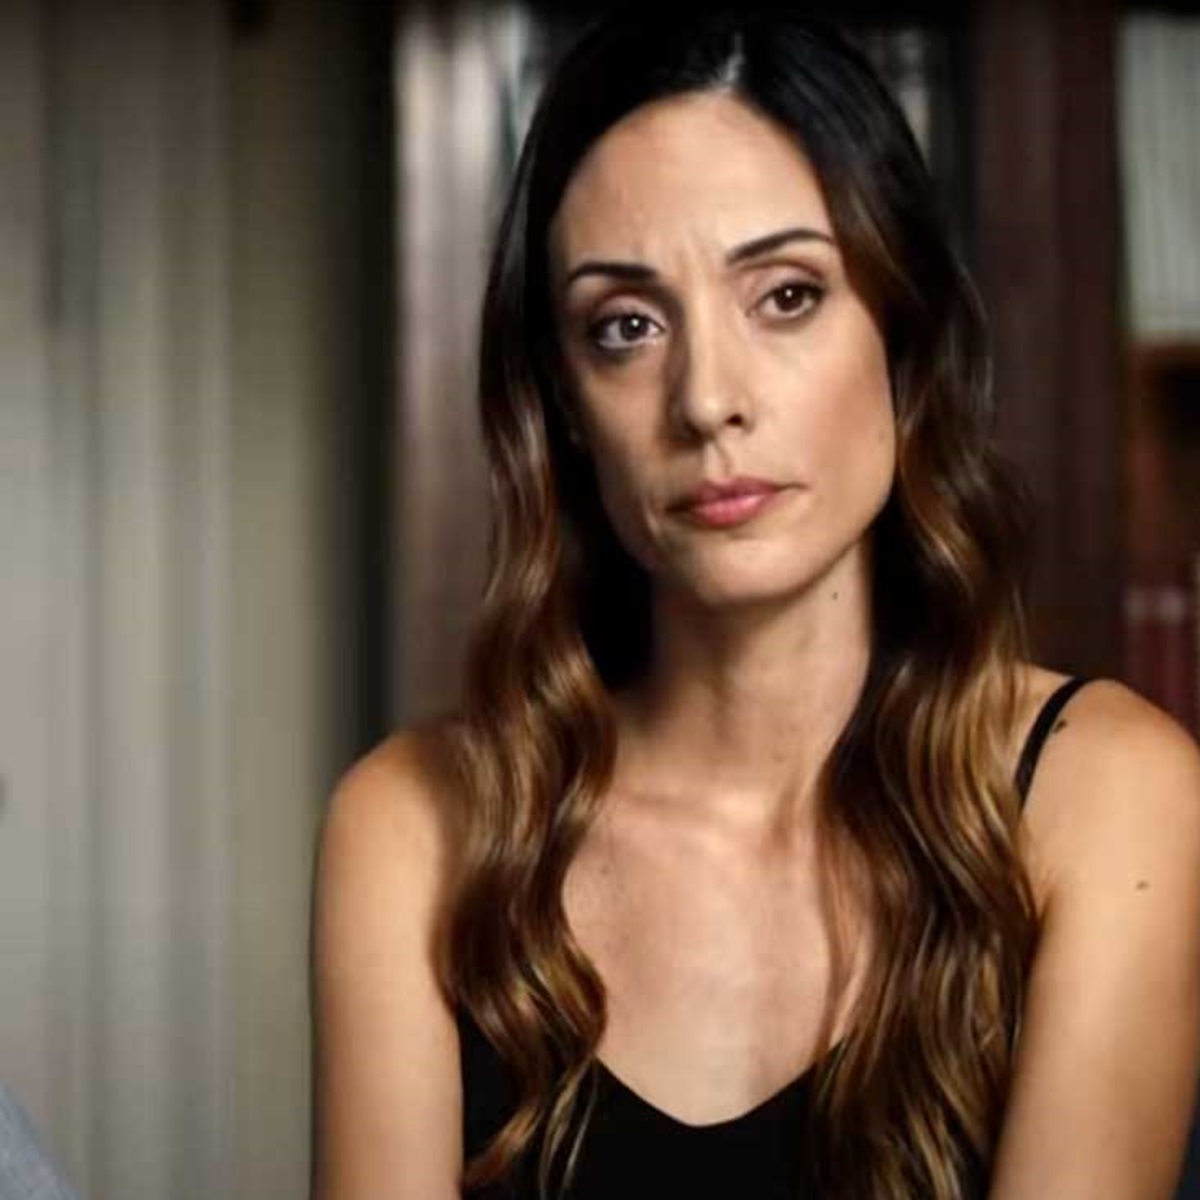 il figlio film argentino thriller psicologico trama cast recensione trailer netflix